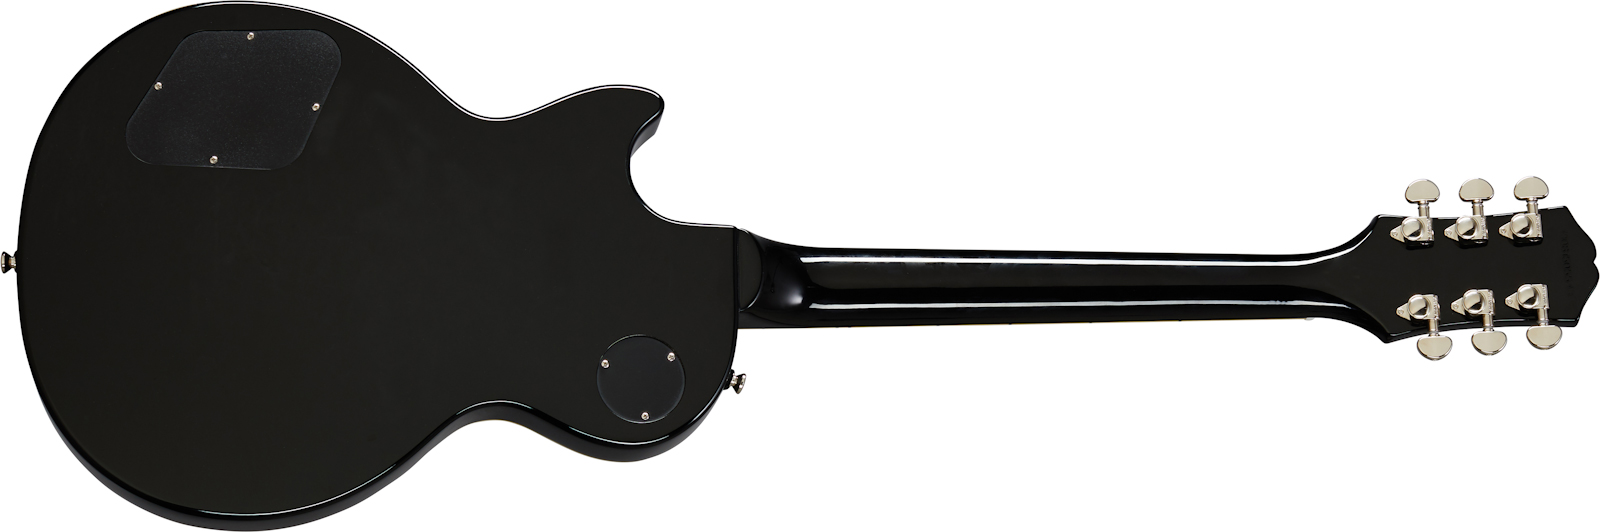 Epiphone Les Paul Classic Modern 2020 2h Ht Lau - Ebony - Guitare Électrique Single Cut - Variation 1